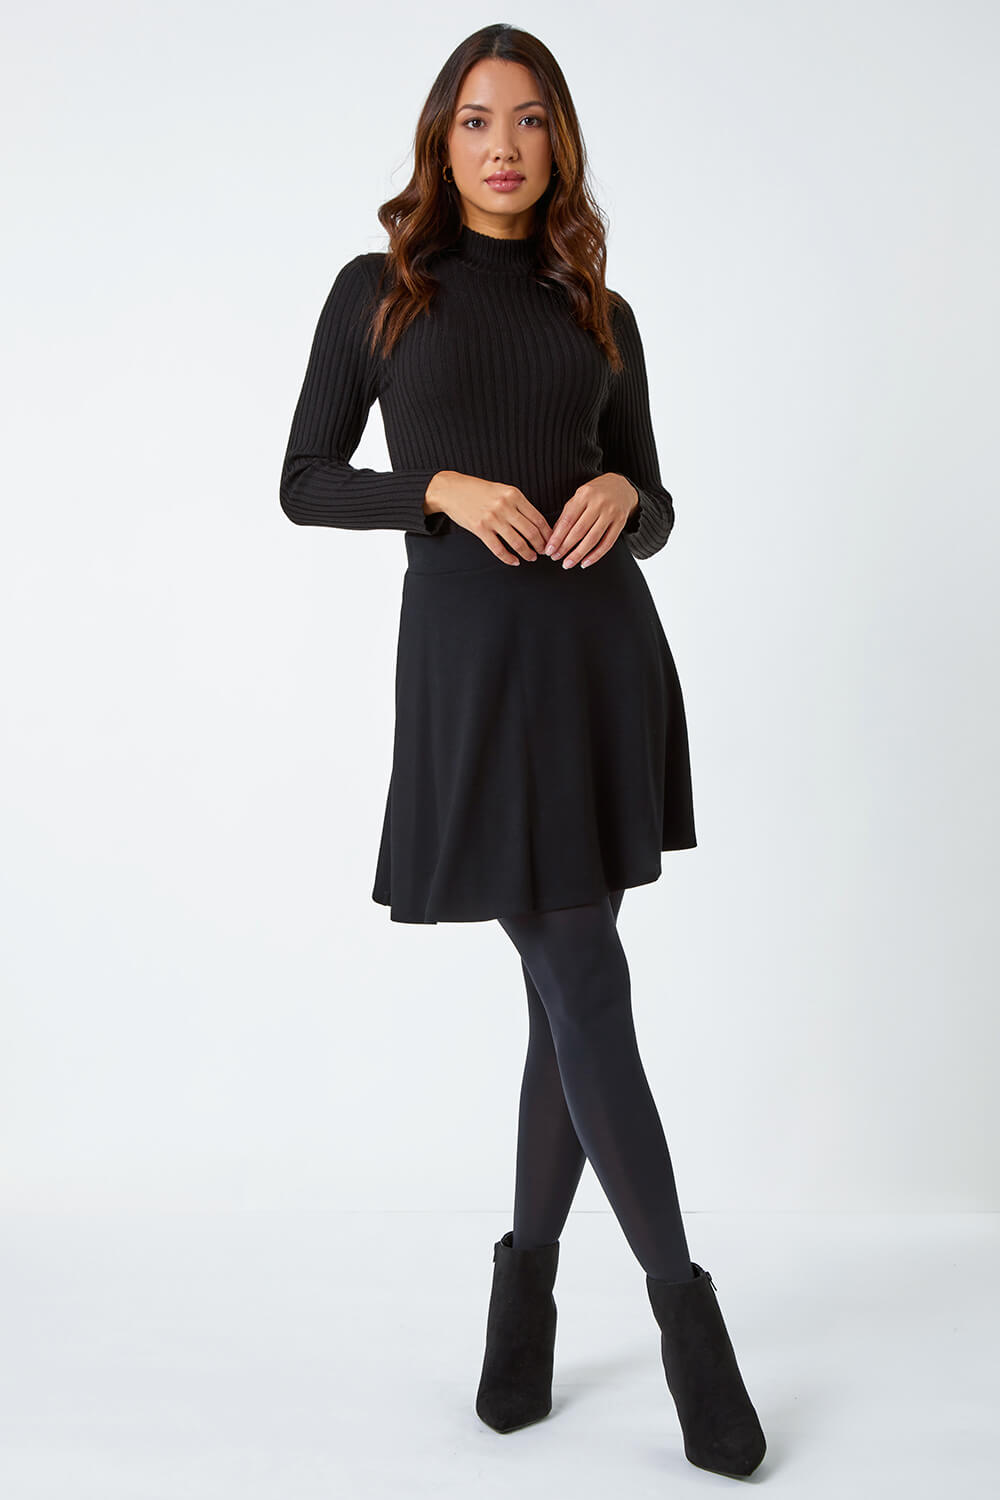 Black Stretch Skater Skirt, Image 2 of 5